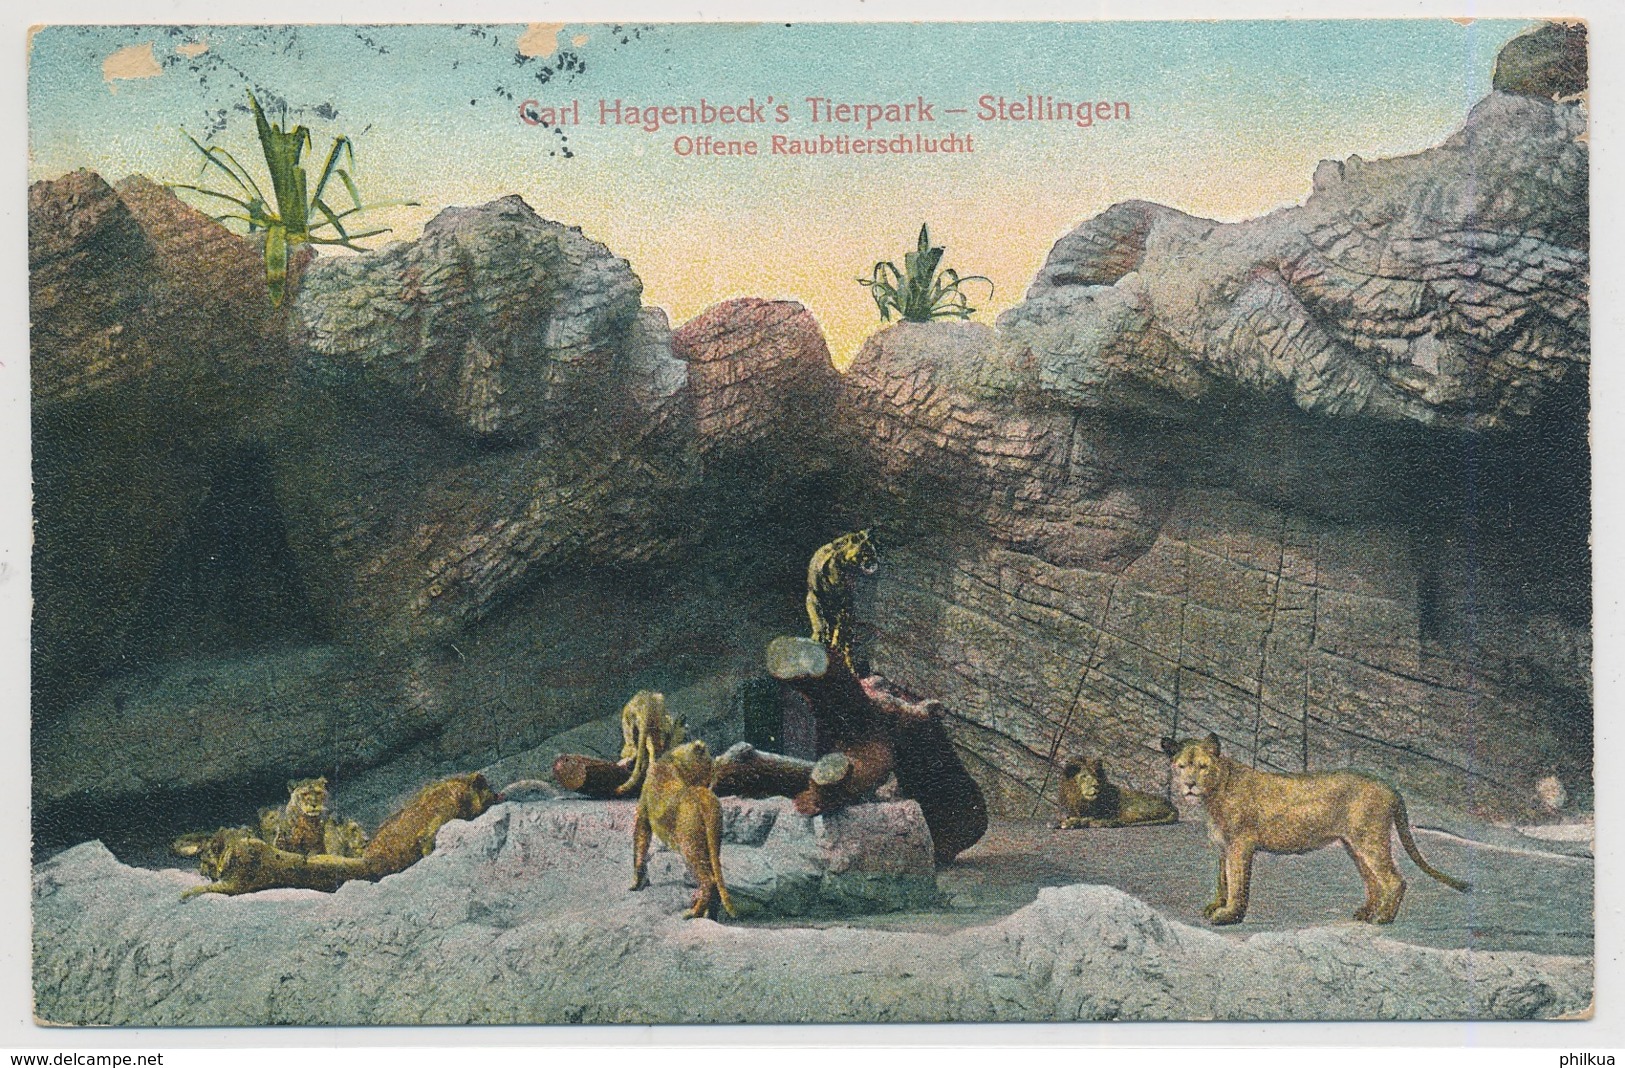 Gerald Hagenbeck's Tierpark - Stellingen - Offene Raubtierschlucht - 1908 - Stellingen